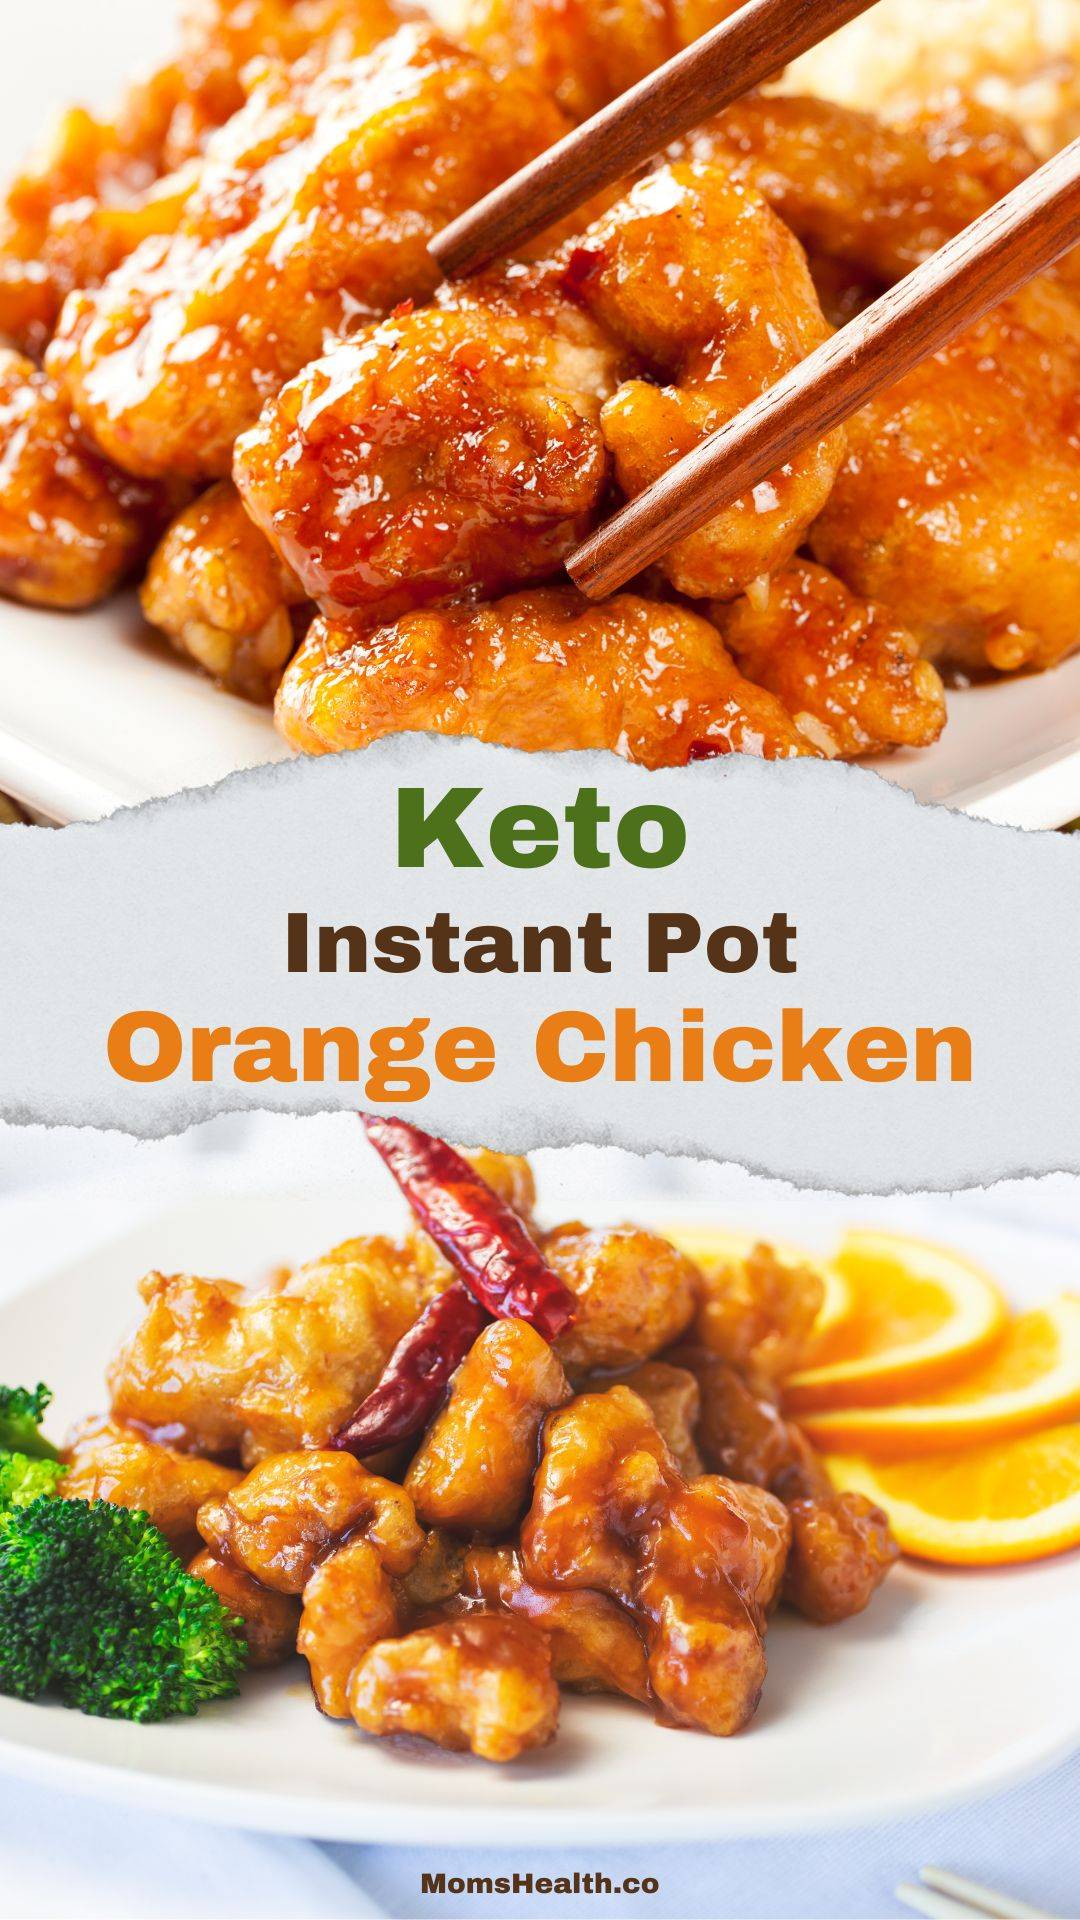 Keto Instant Pot Orange Chicken